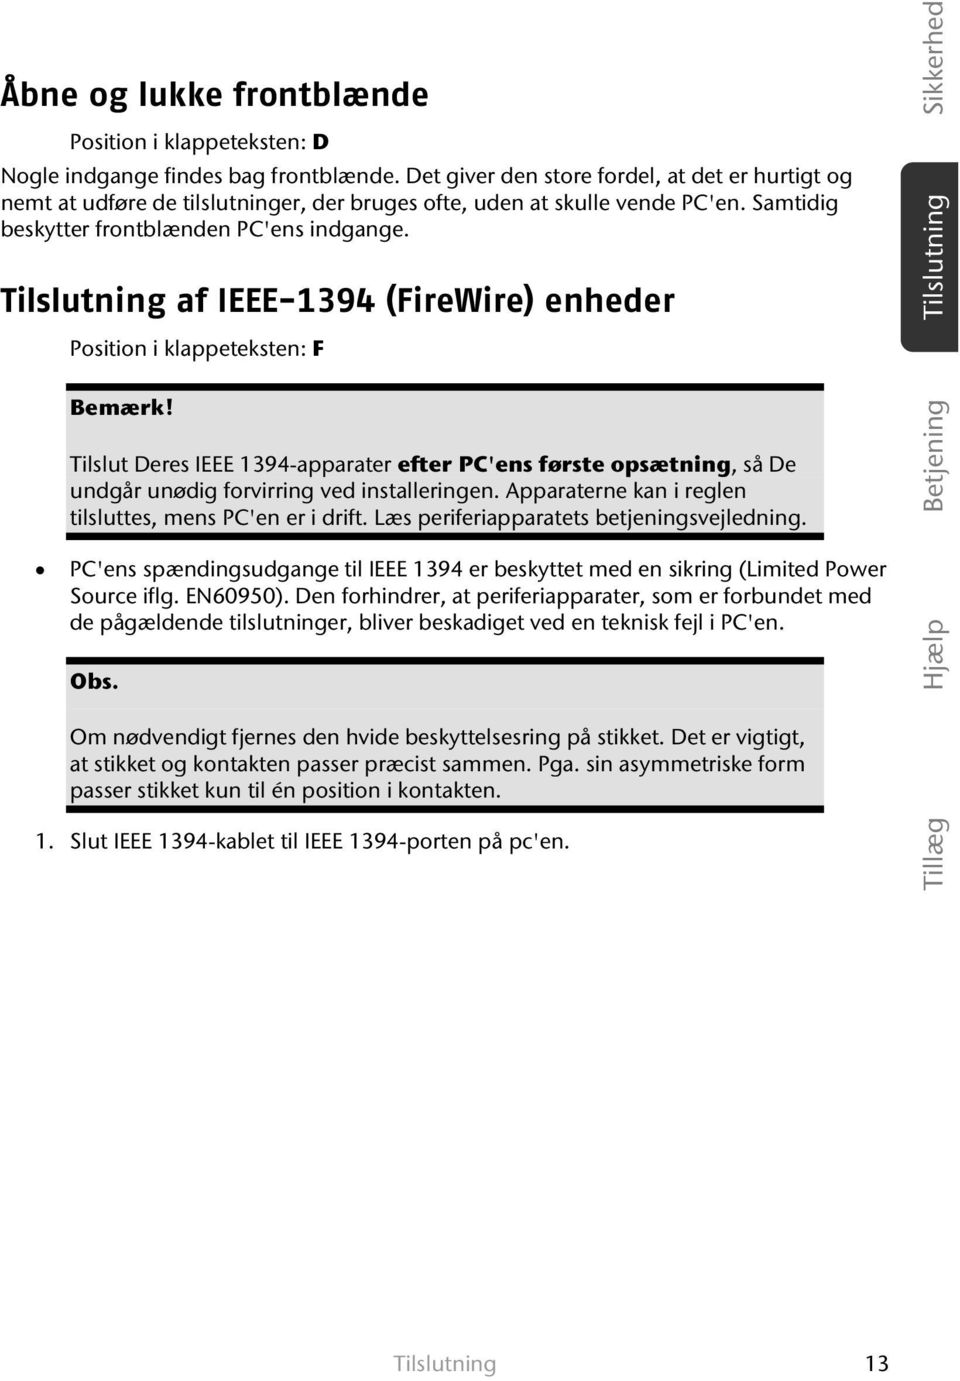 Tilslutning af IEEE-1394 (FireWire) enheder Position i klappeteksten: F Bemærk! Tilslut Deres IEEE 1394-apparater efter PC'ens første opsætning, så De undgår unødig forvirring ved installeringen.